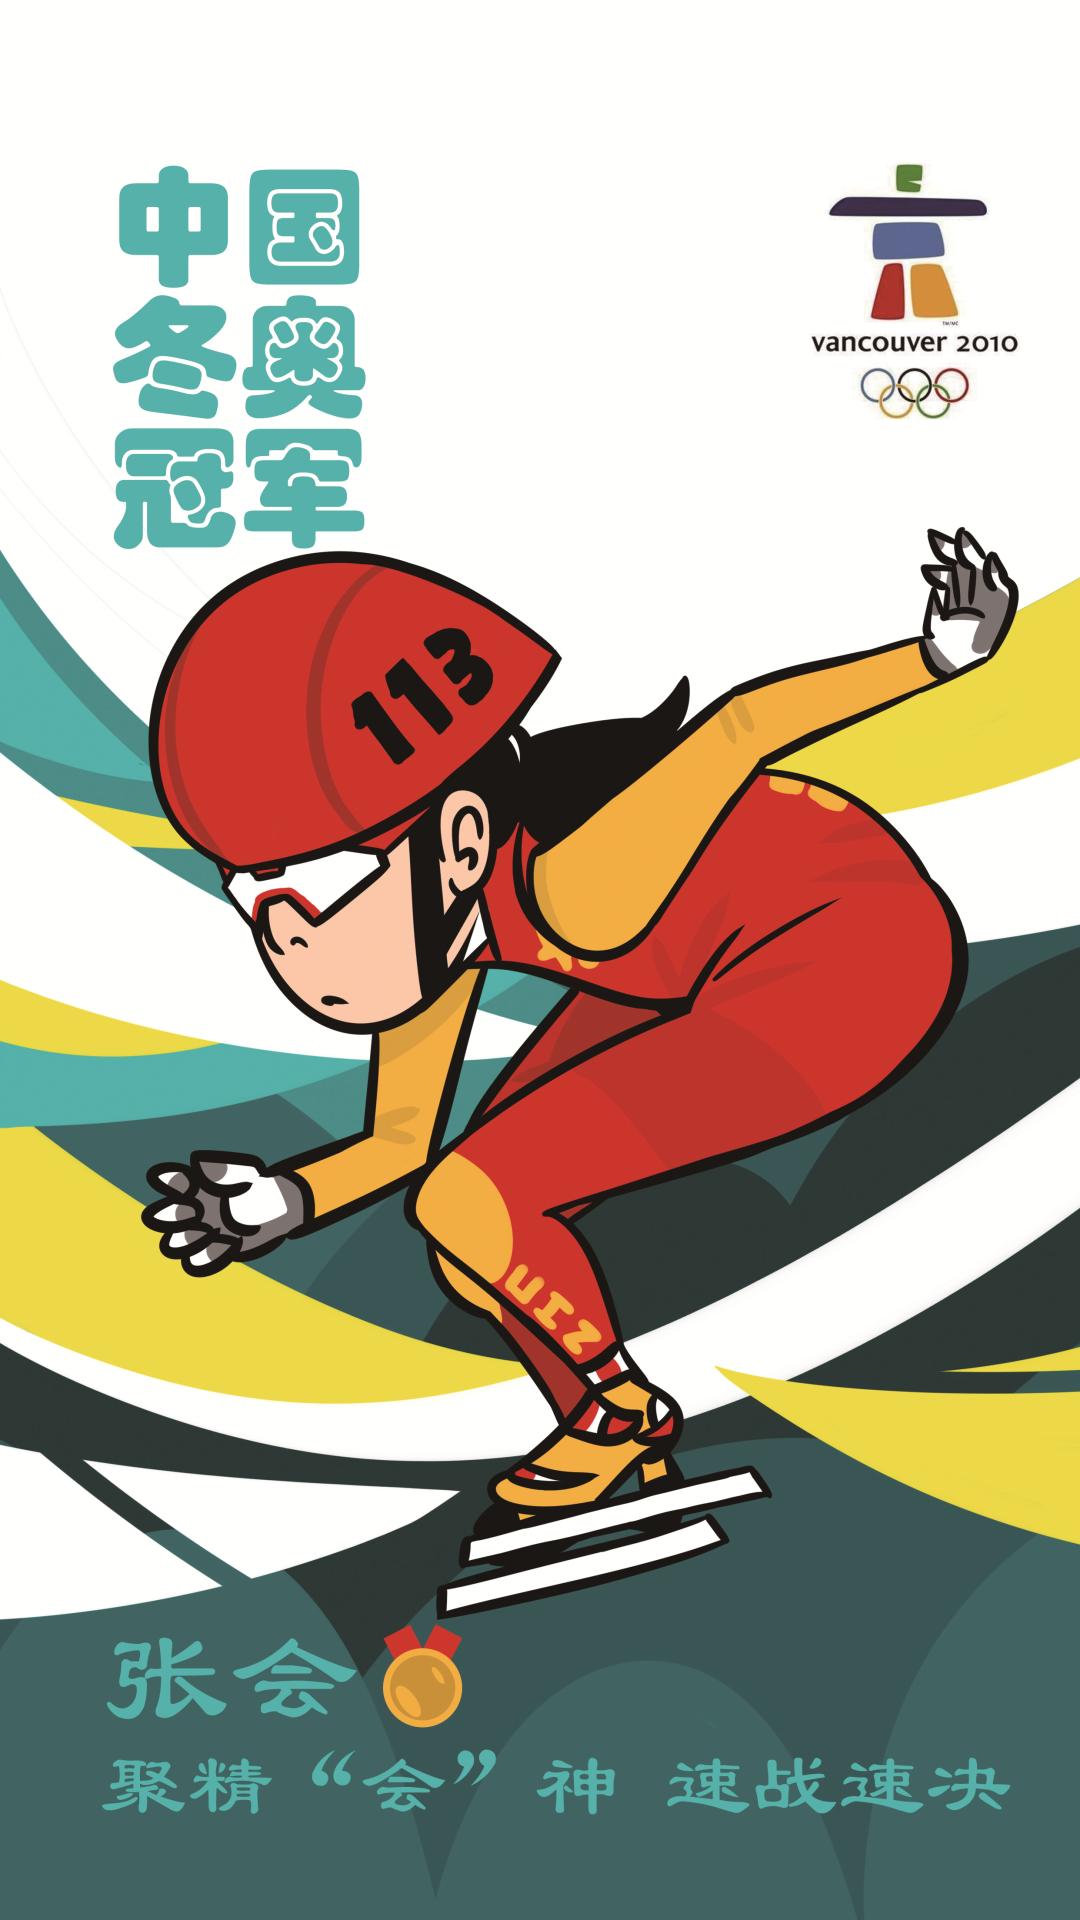 王蒙,周洋,孙琳琳,张会还参加了短道速滑女子3000米的接力项目,并成功